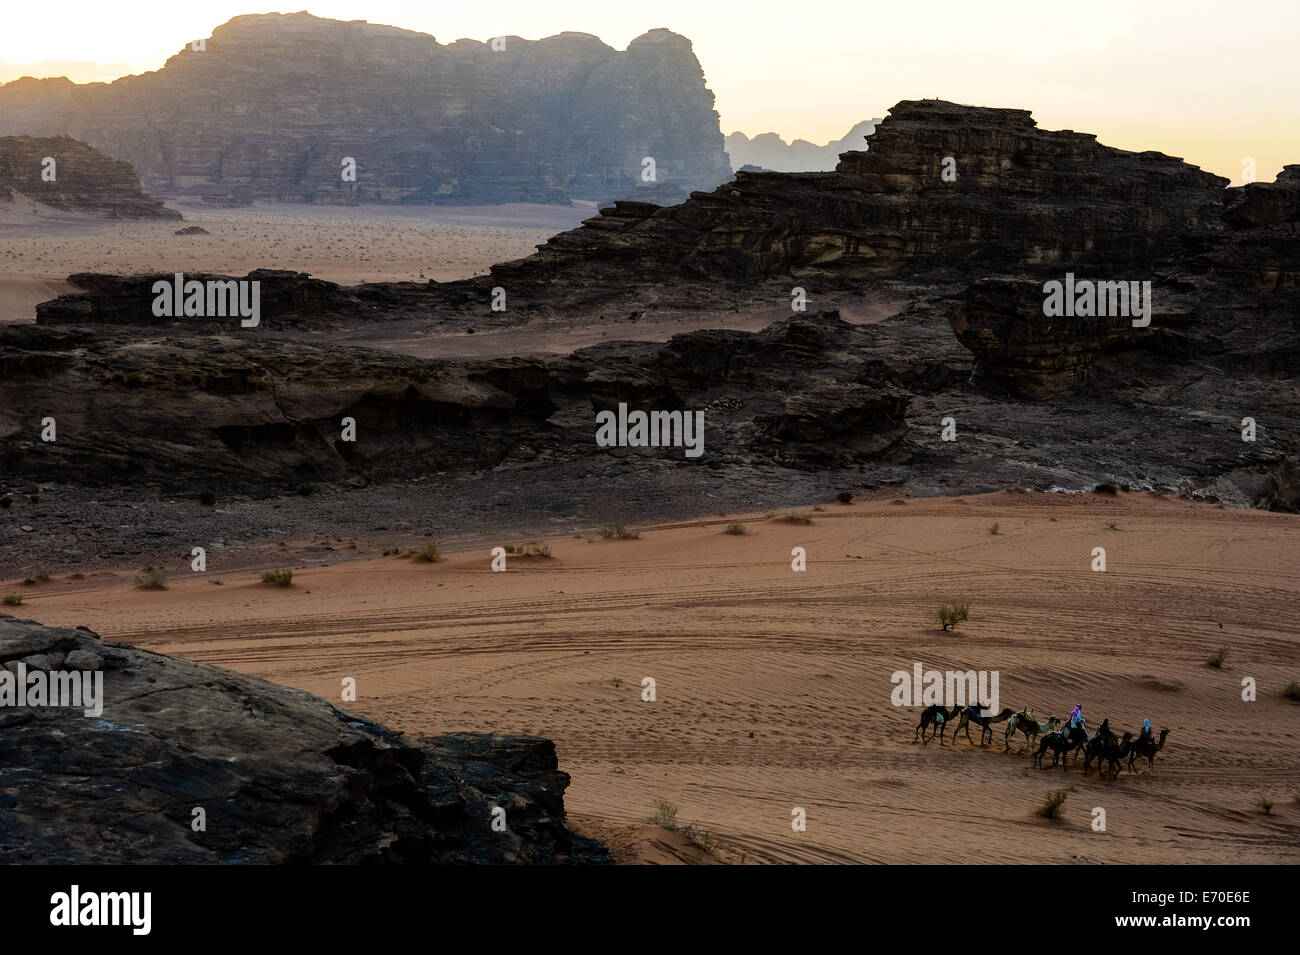 La Jordanie. Le wadi Rum est aussi connu sous le nom de vallée de la Lune. Petite caravane de dromadaires en direction du camp bédouin. Banque D'Images